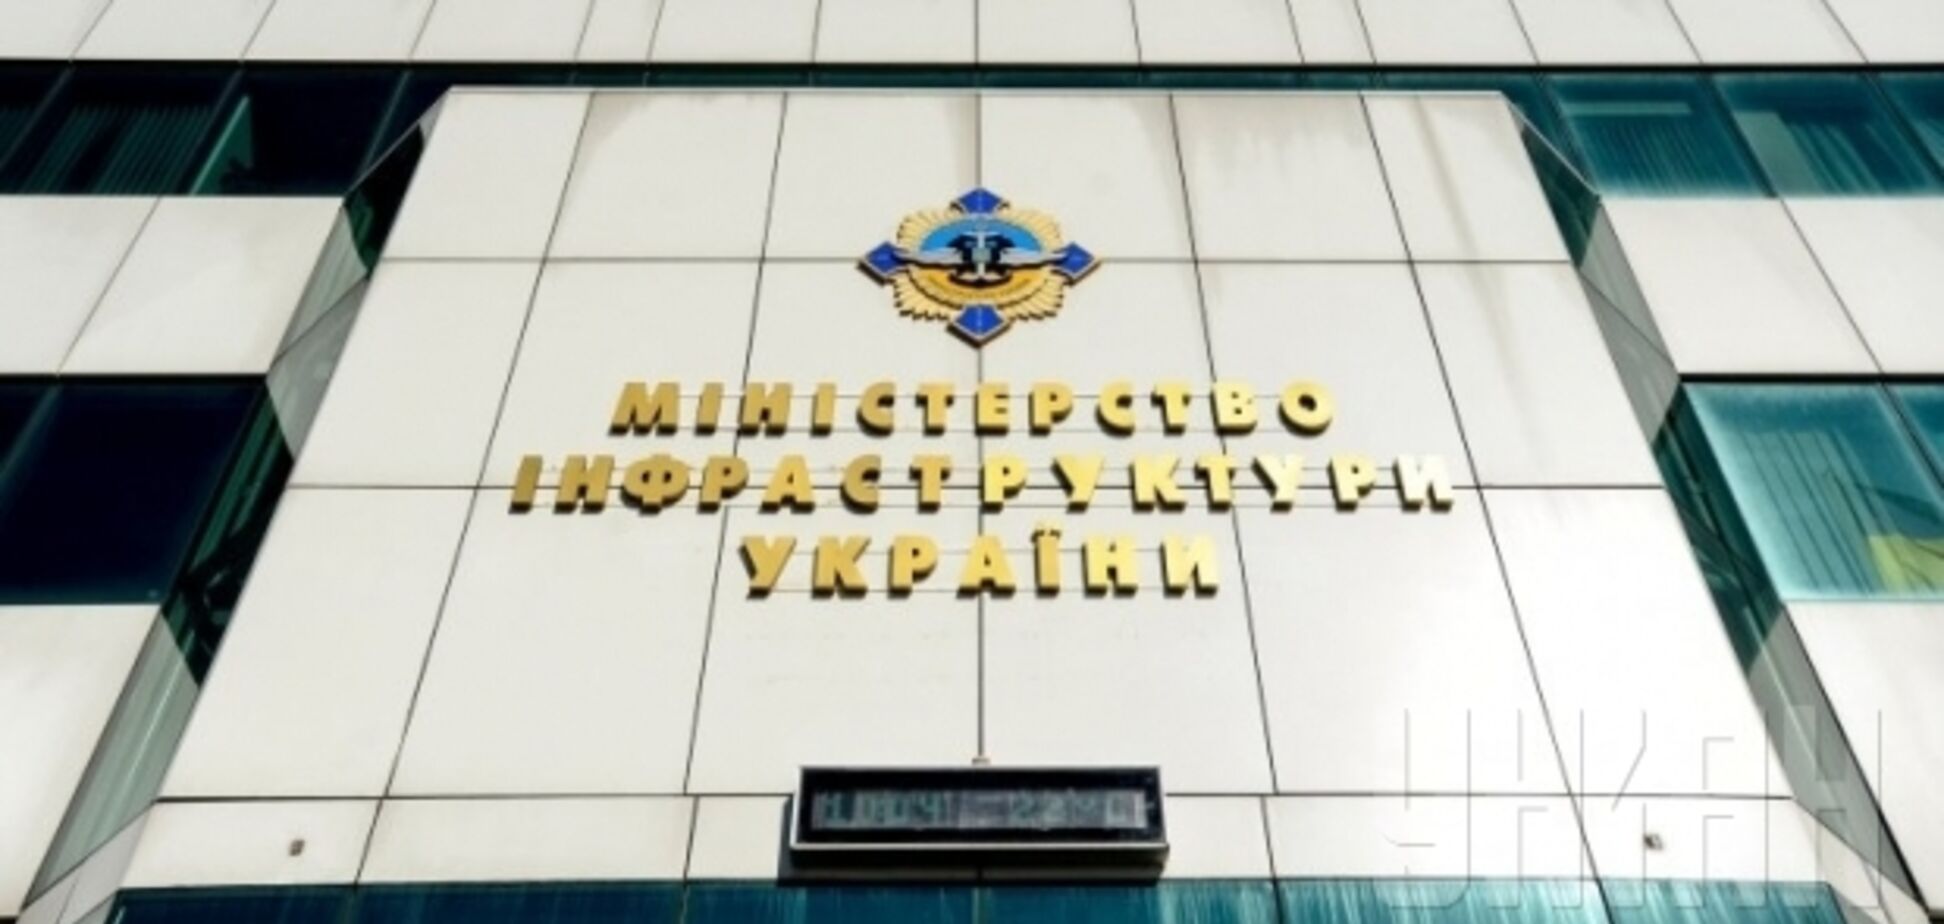 Вместо поддержки промышленности, Мининфраструктуры пытается поднять тарифы – глава 'Укрметаллургпрома'